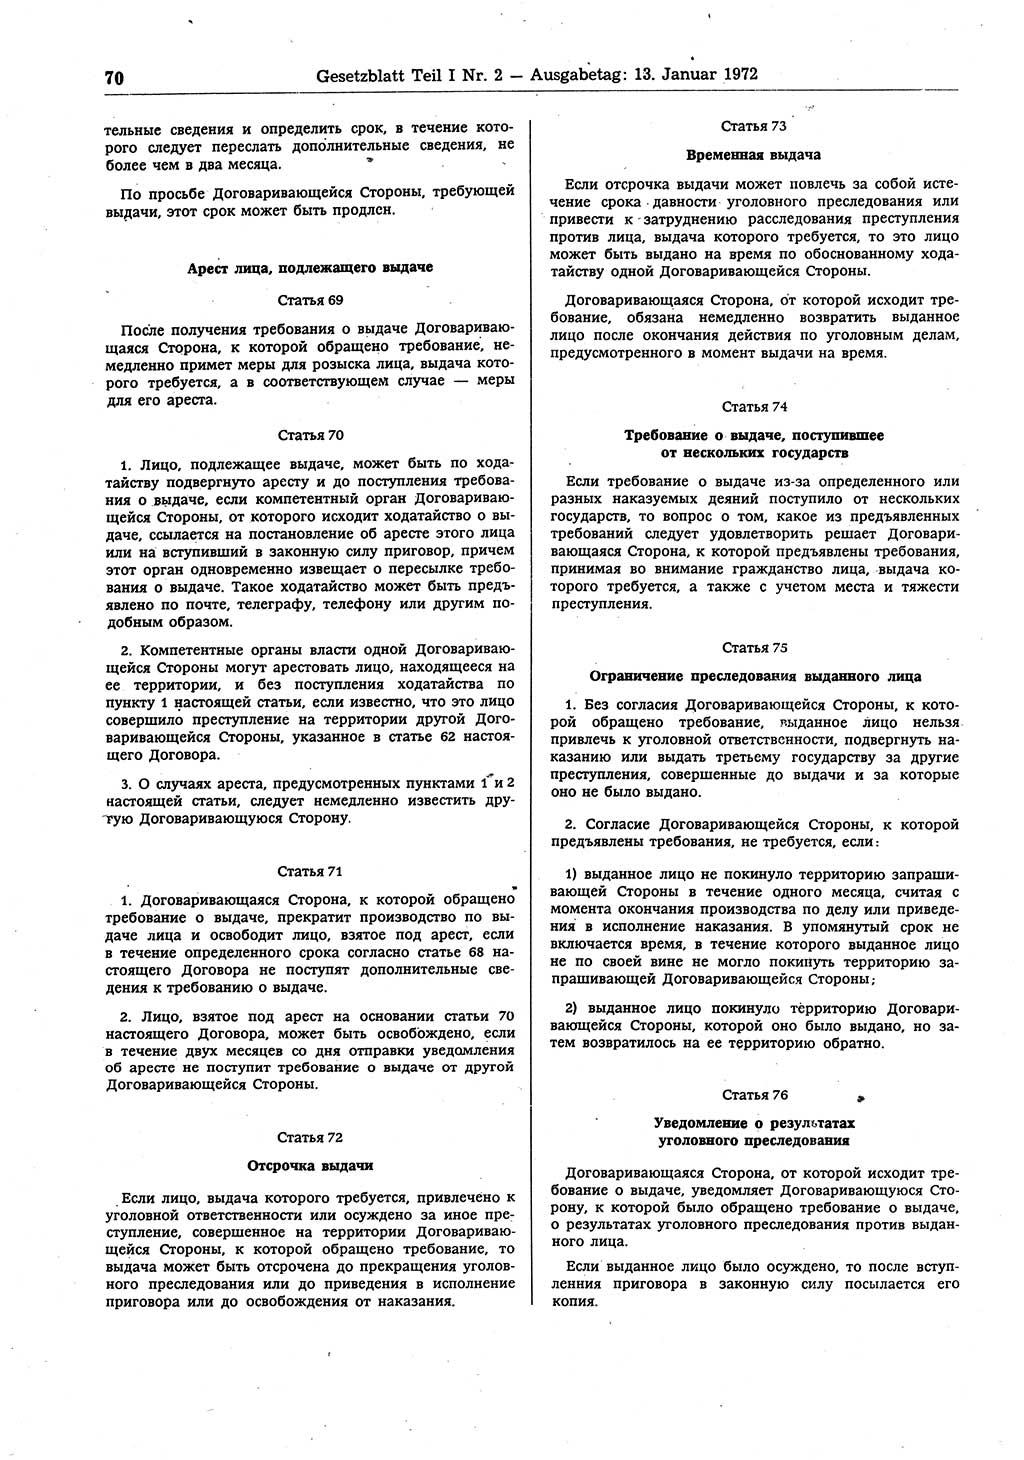 Gesetzblatt (GBl.) der Deutschen Demokratischen Republik (DDR) Teil Ⅰ 1972, Seite 70 (GBl. DDR Ⅰ 1972, S. 70)